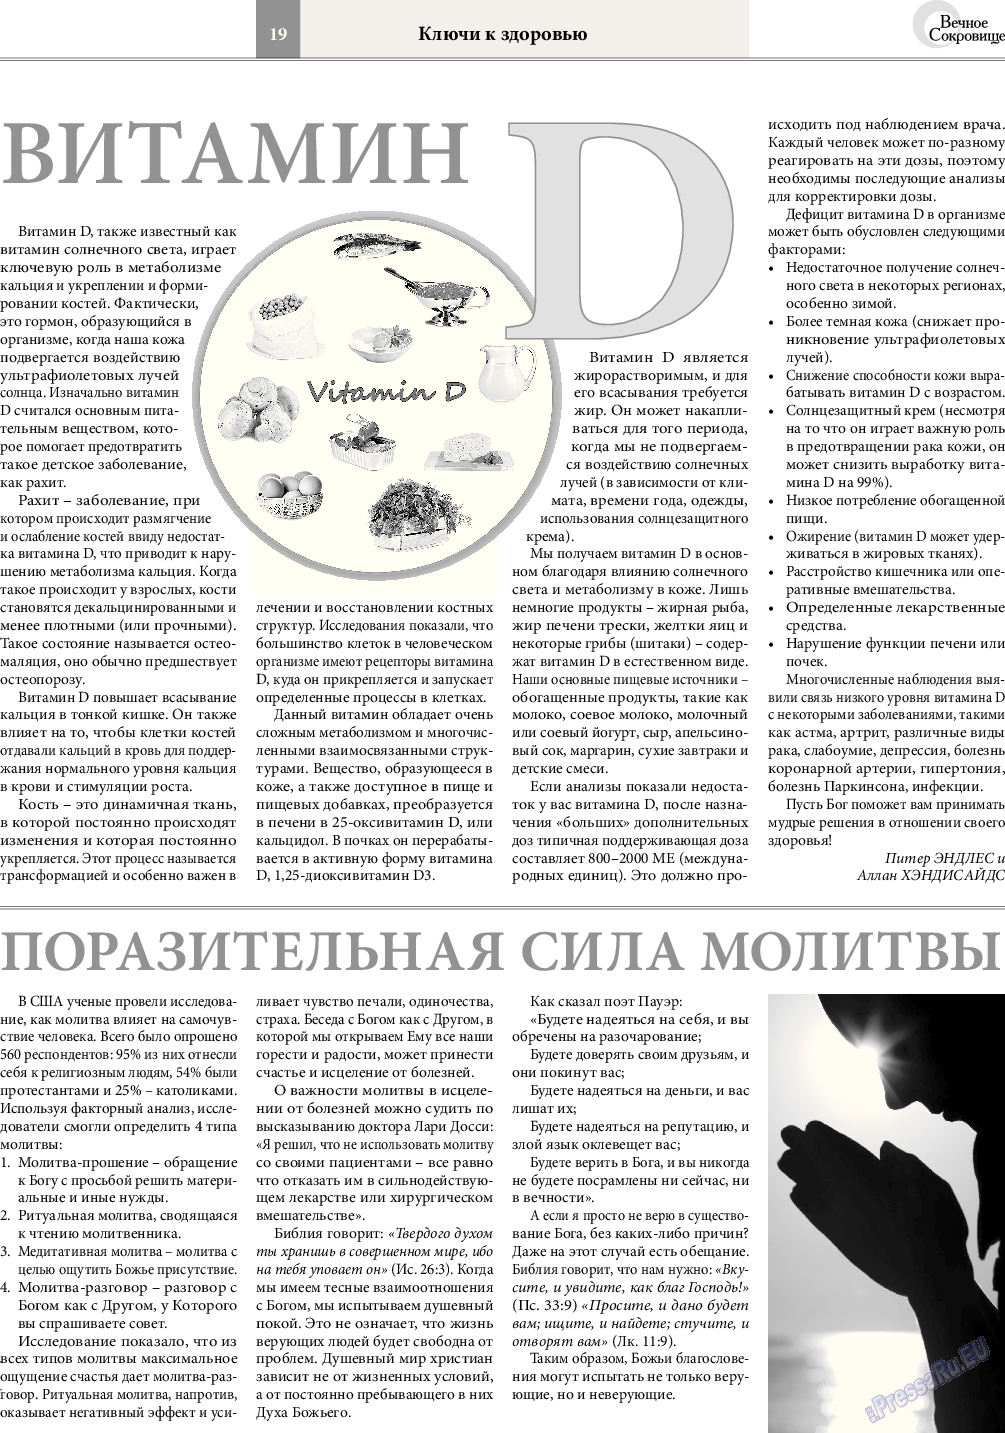 Вечное сокровище, газета. 2015 №4 стр.19